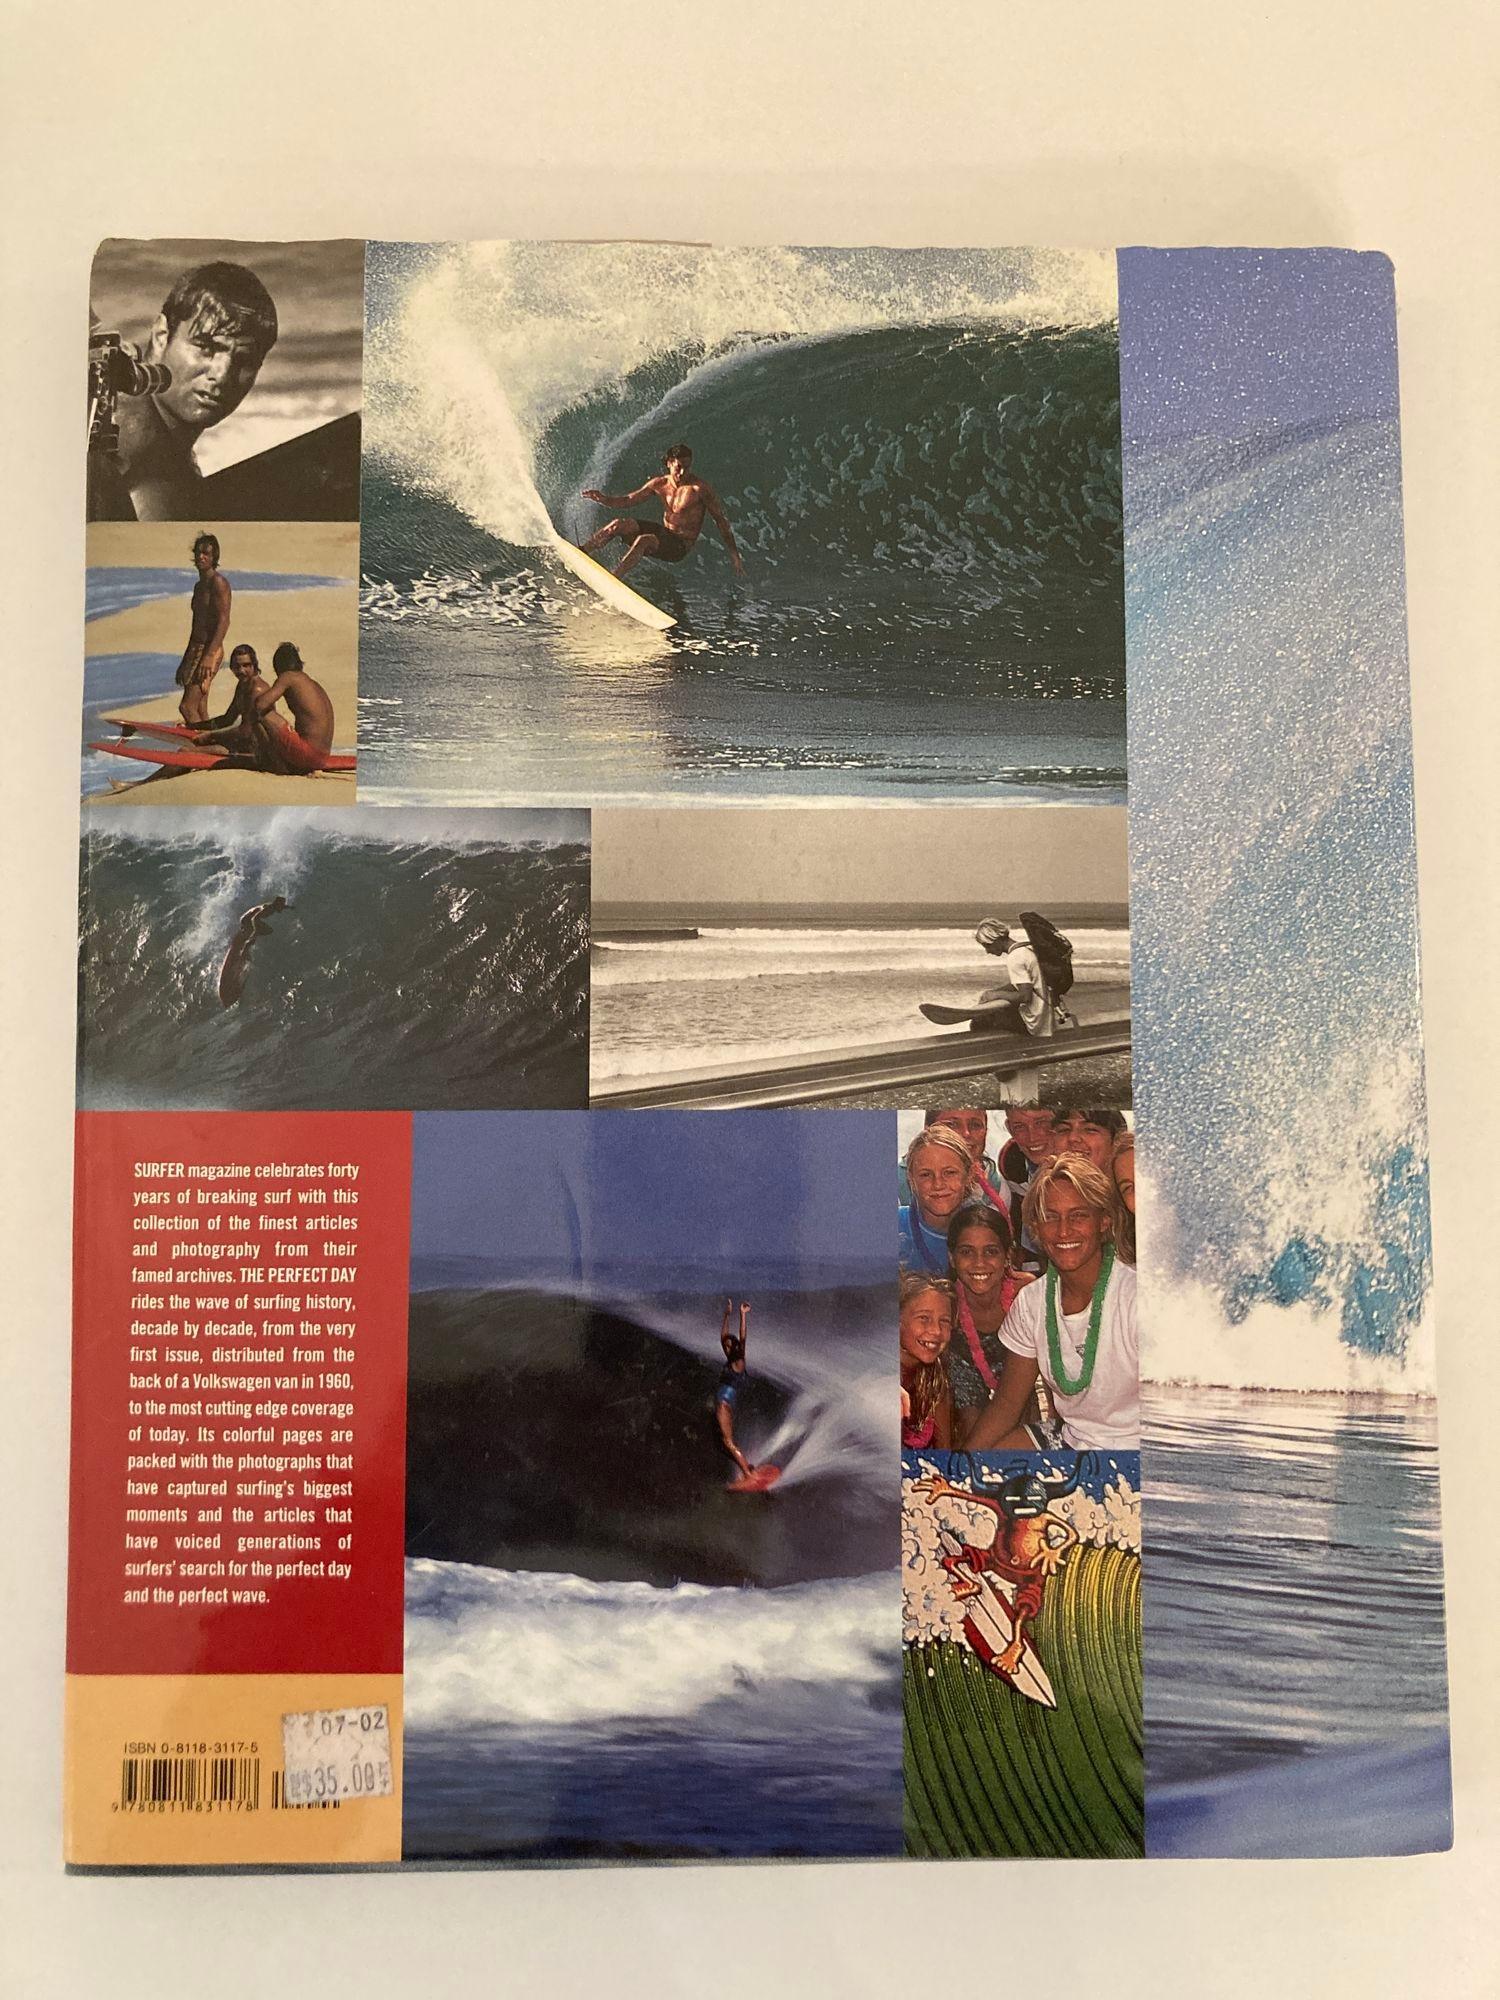 Le jour parfait : 40 Years of Surfer Magazine Hardcover Book
Titre : The Perfect Day : 40 ans de Surfer Magazine
Editeur : Chronicle Books
Date de publication : 2001
Reliure : Couverture rigide
État du livre : Bon
Synopsis :
